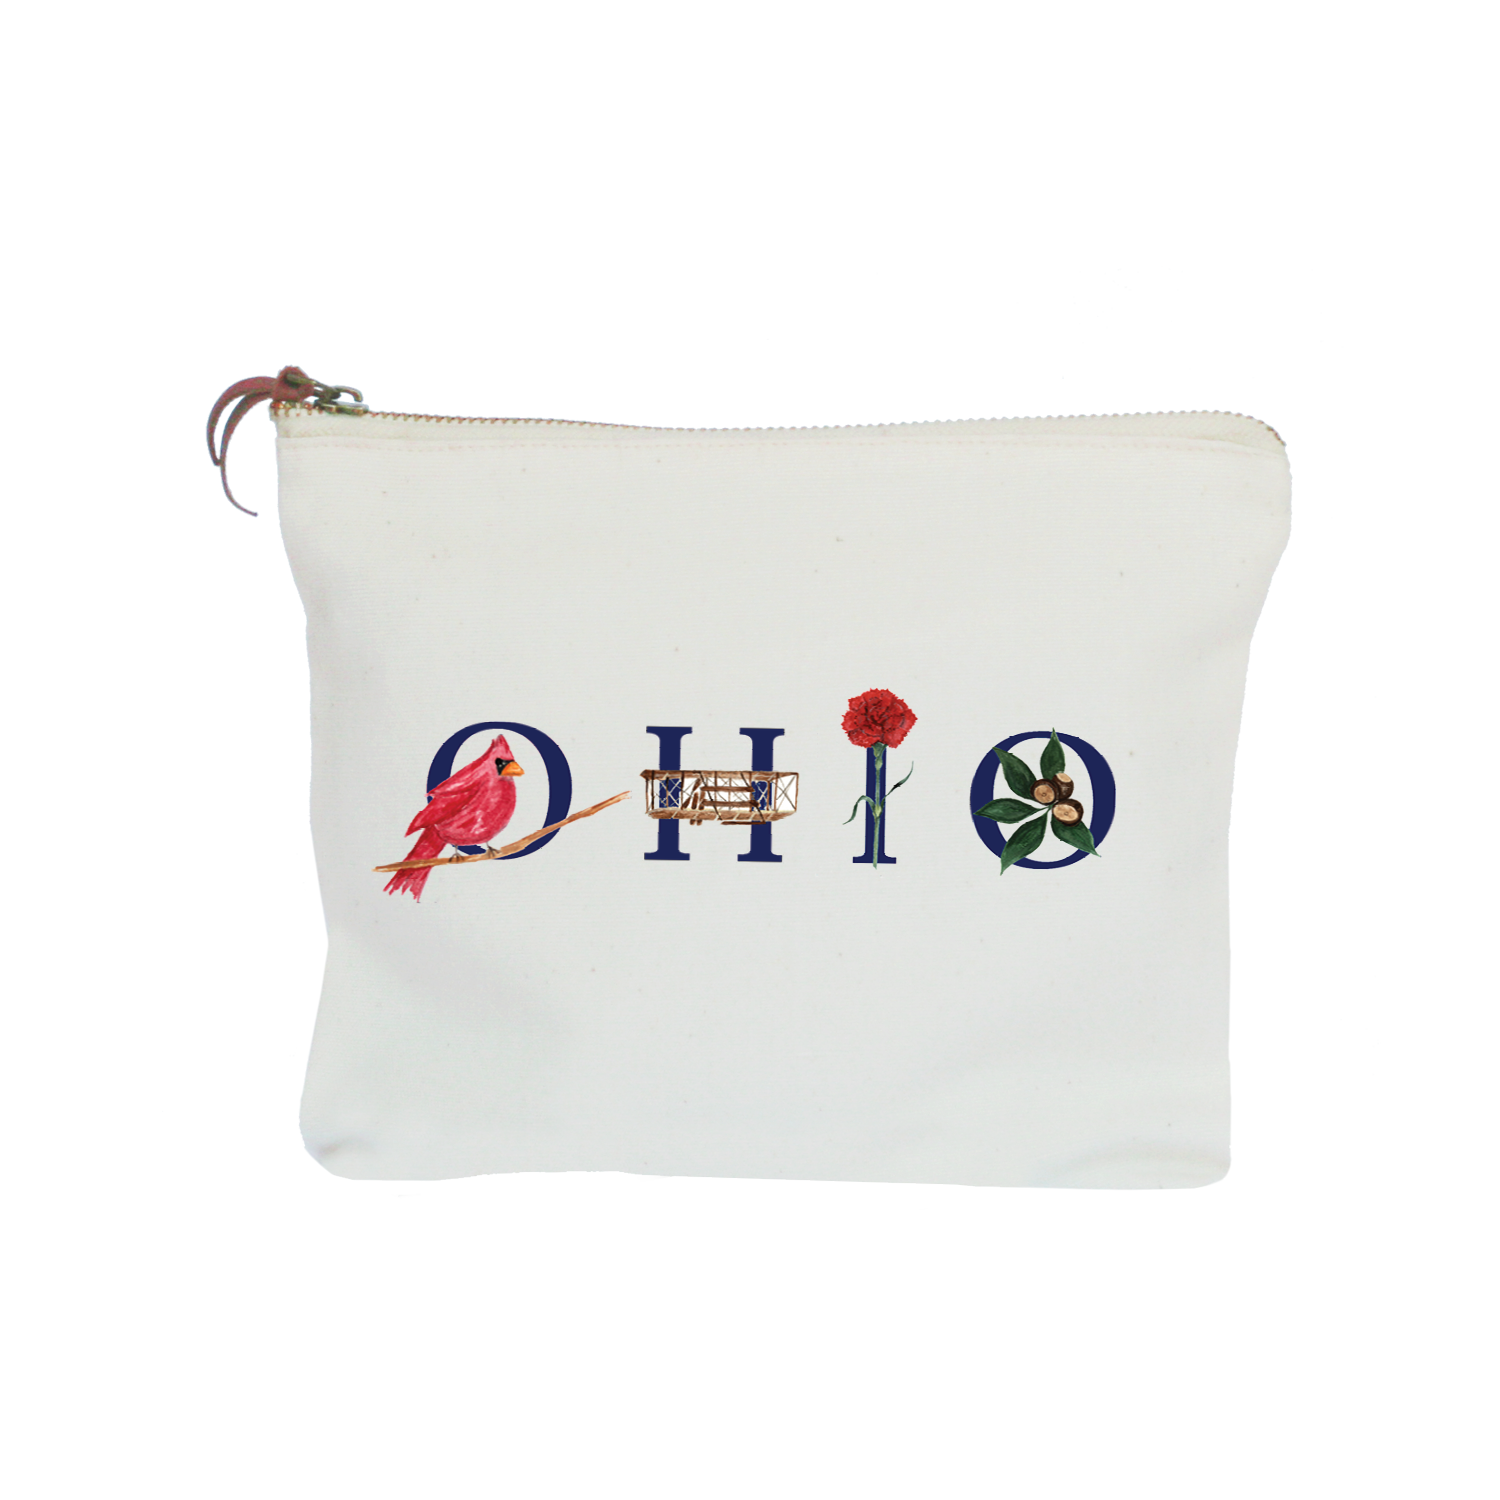 Ohio zipper pouch